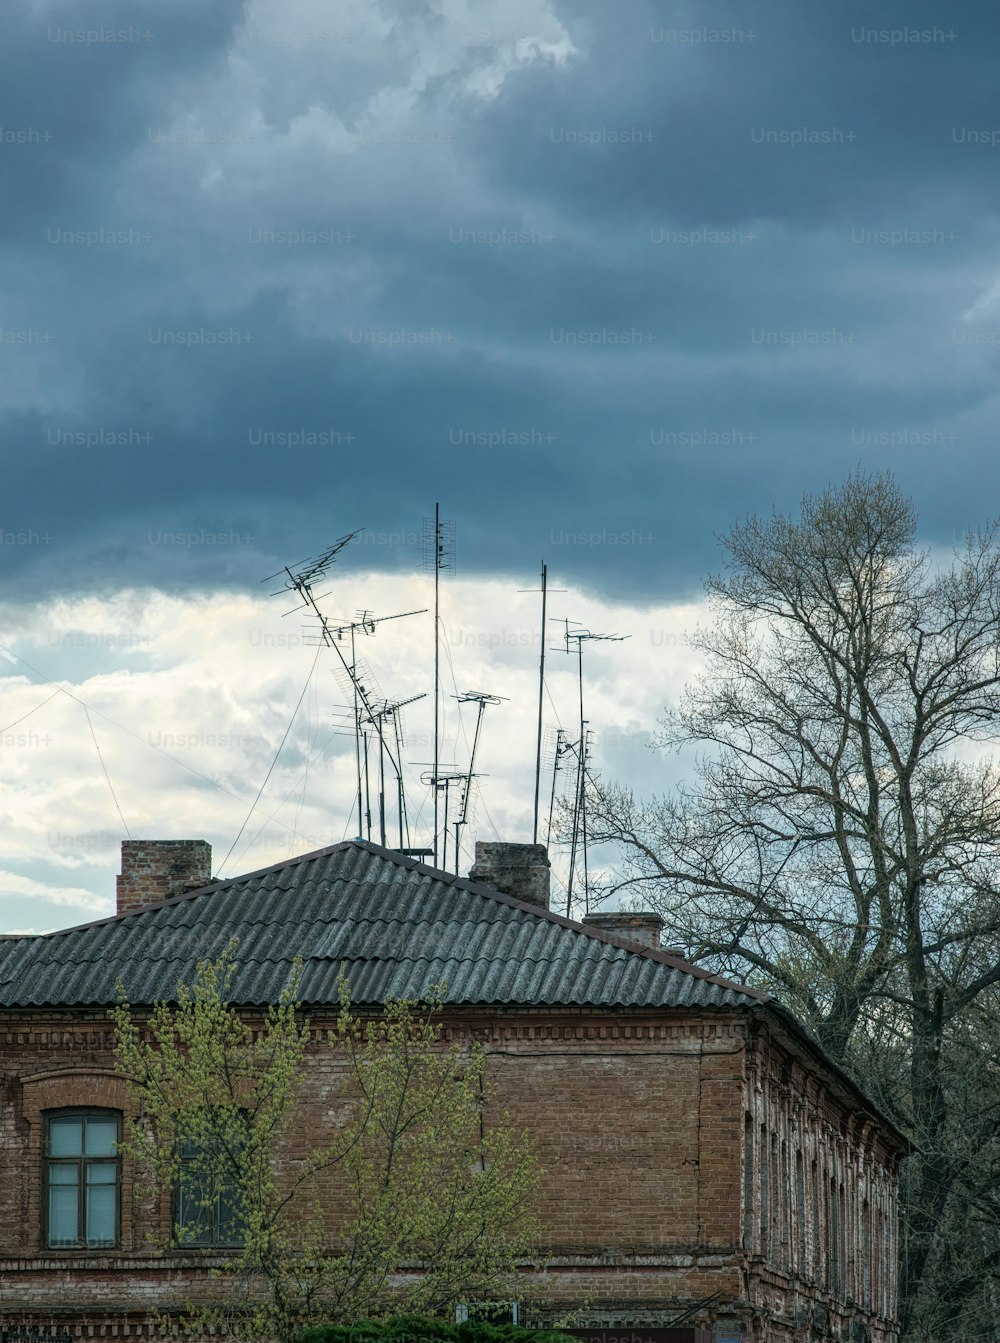 時代遅れのアナログ技術と古い老朽化した建築。嵐の空の灰色の雲を背景にしたスレート屋根と古い錆びたテレビアンテナ